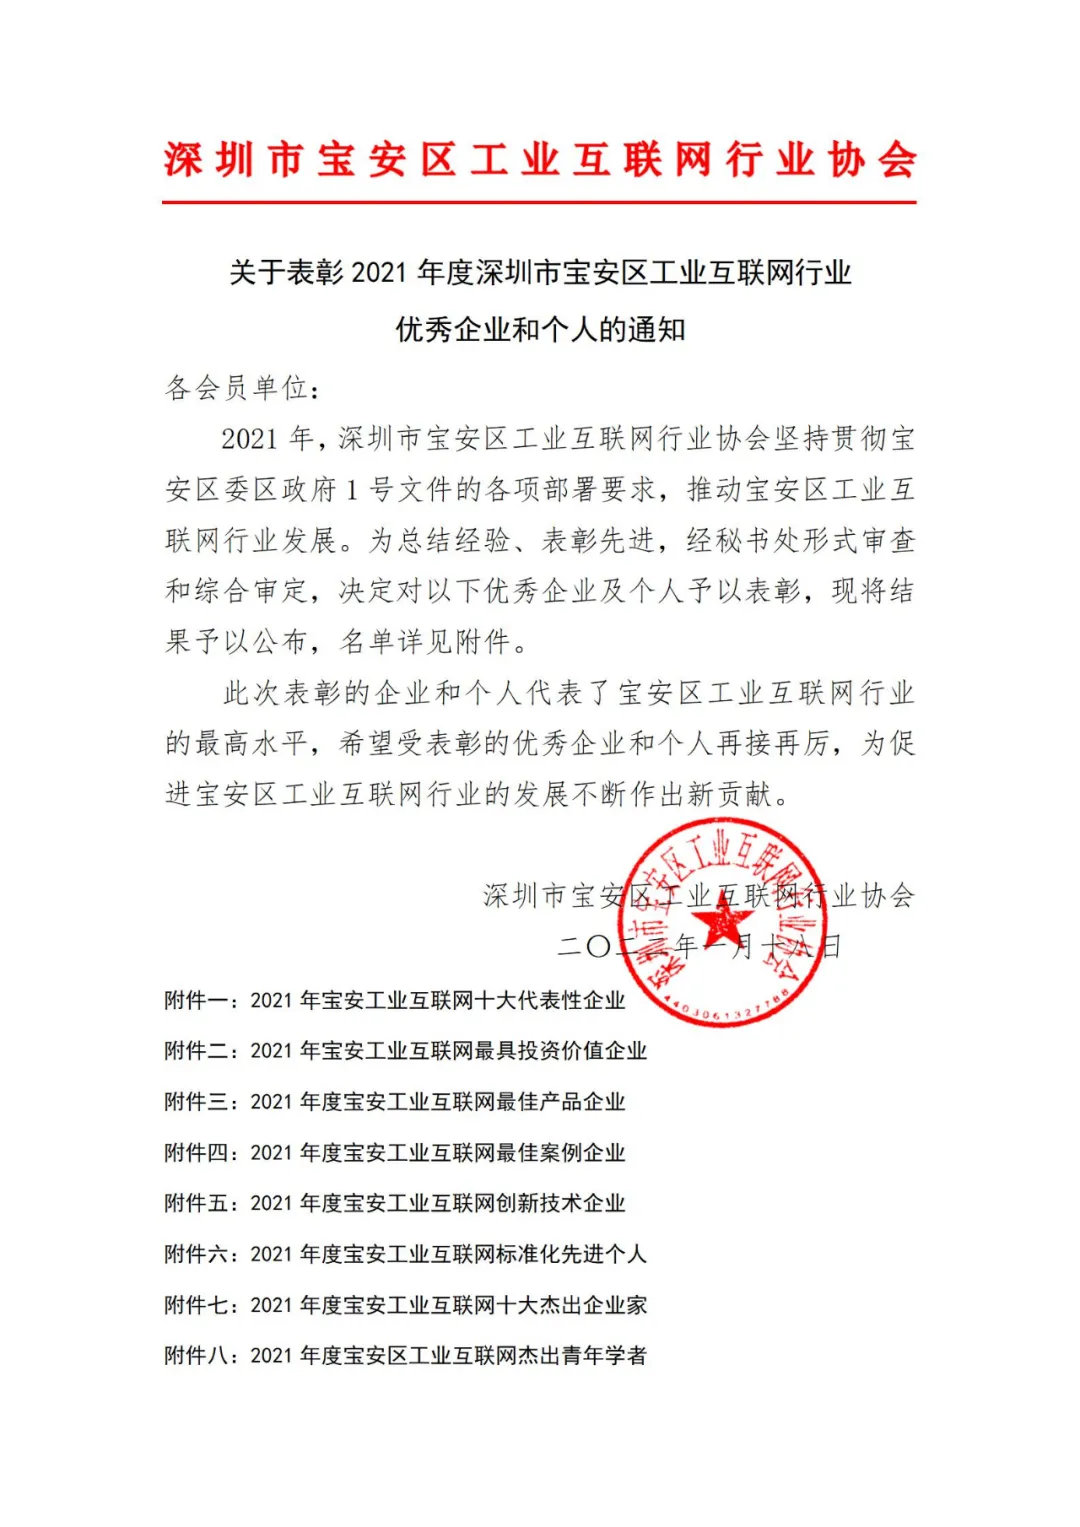 浦联智能被深圳市宝安区工业互联网行业协会评为“行业优秀企业”